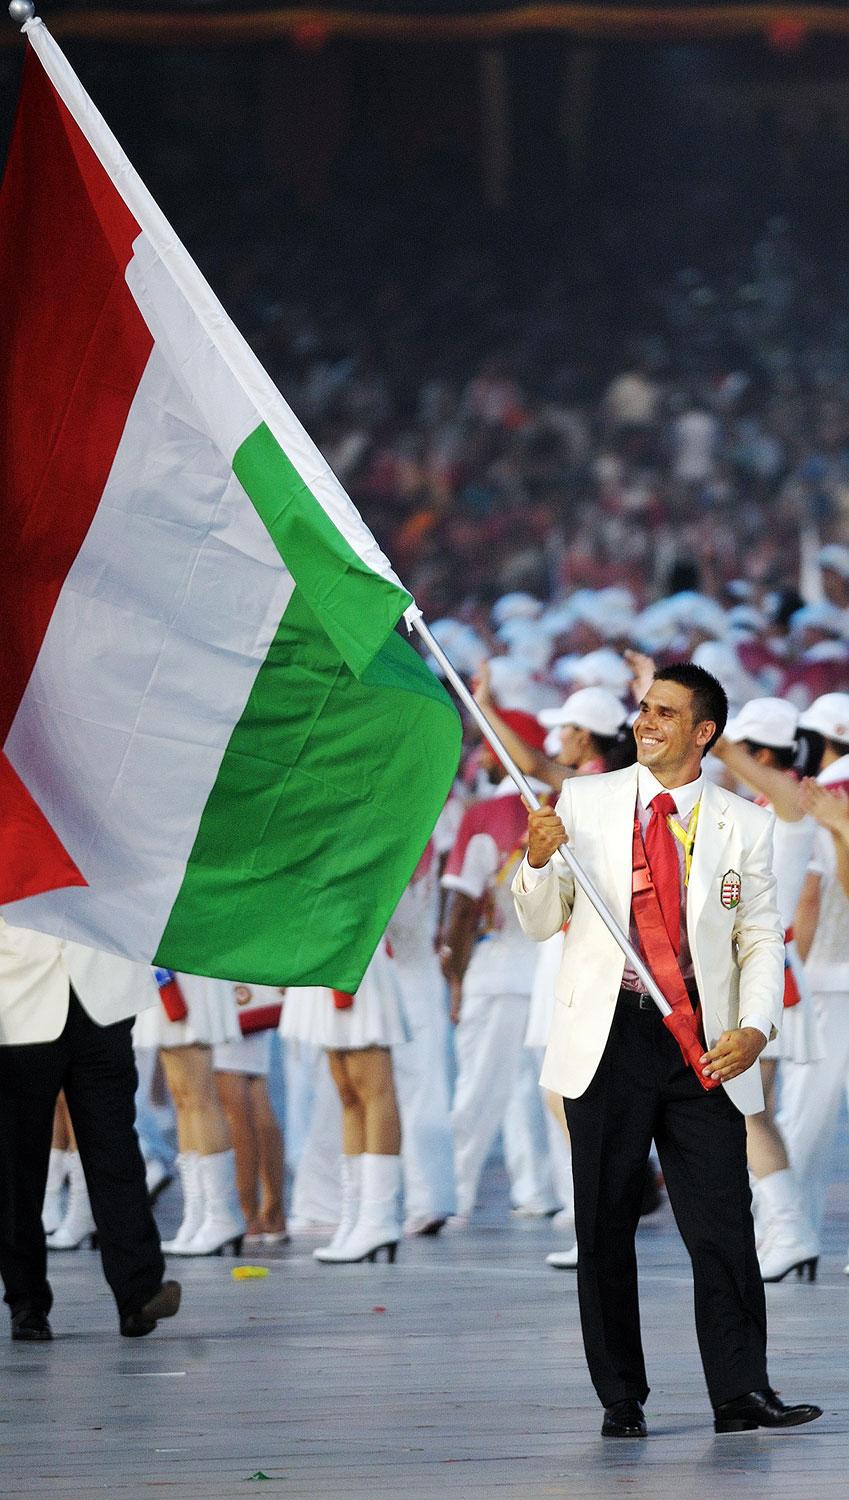 Kammerer Zoltán már háromszoros olimpiai bajnok volt, amikor az a megtiszteltetés  érte, hogy 2008. augusztus 8-án ő vihette a magyar zászlót a pekingi olimpia megnyitóünnepségén. 